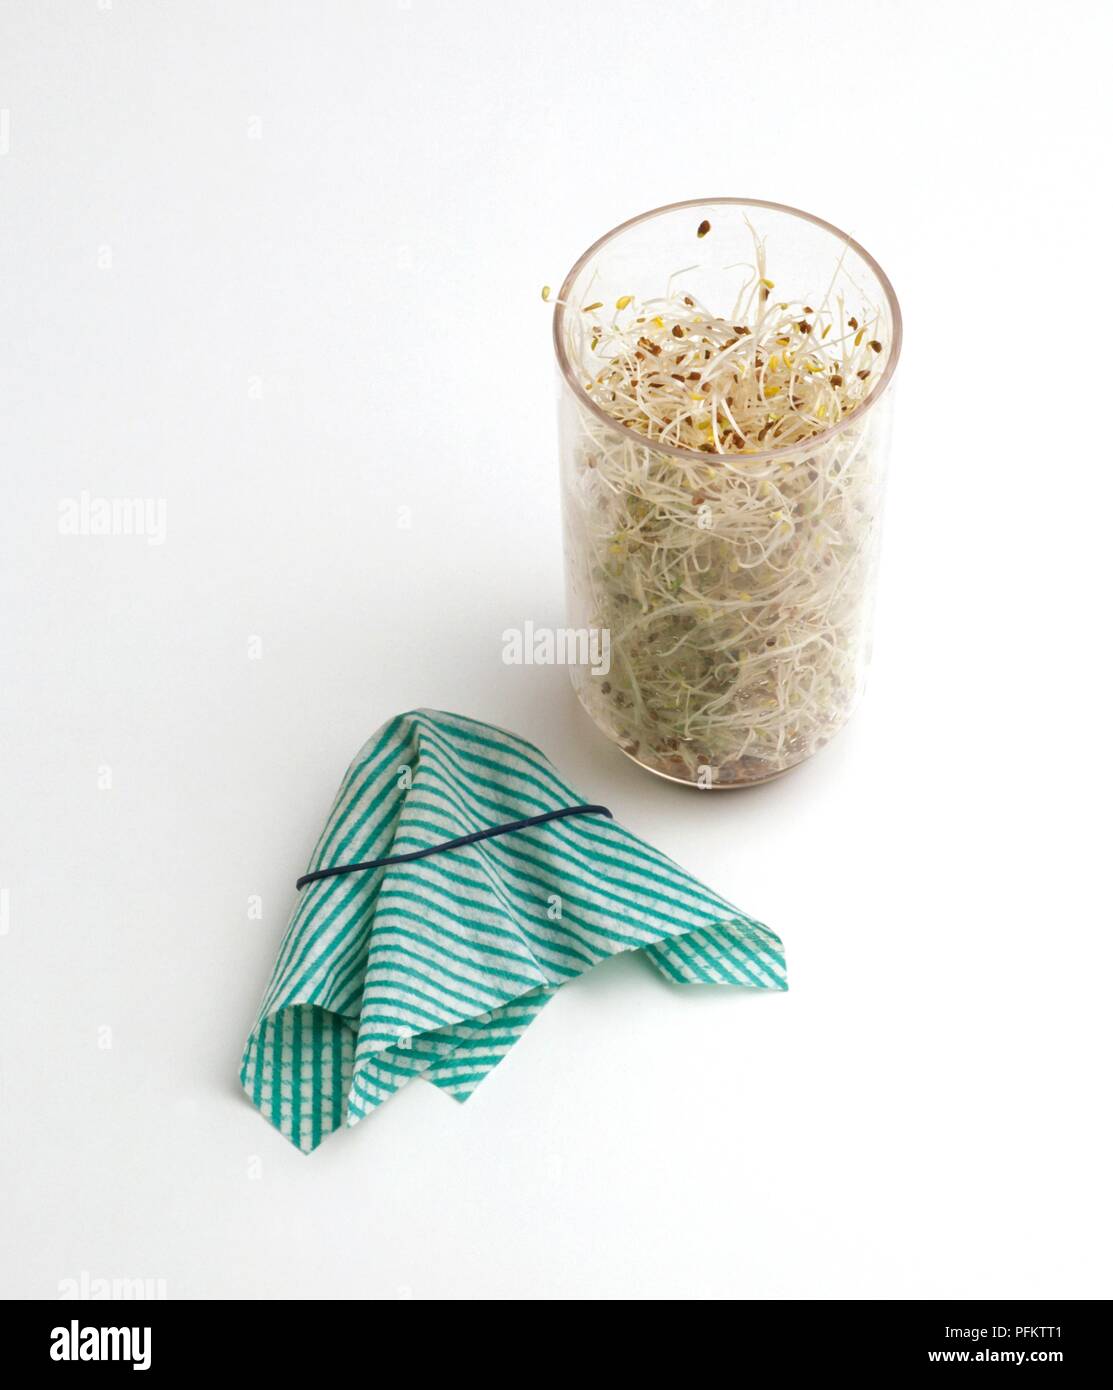 Vaso contenente semi coltivati in erba medica, cucina panno e fascia di gomma accanto ad esso Foto Stock